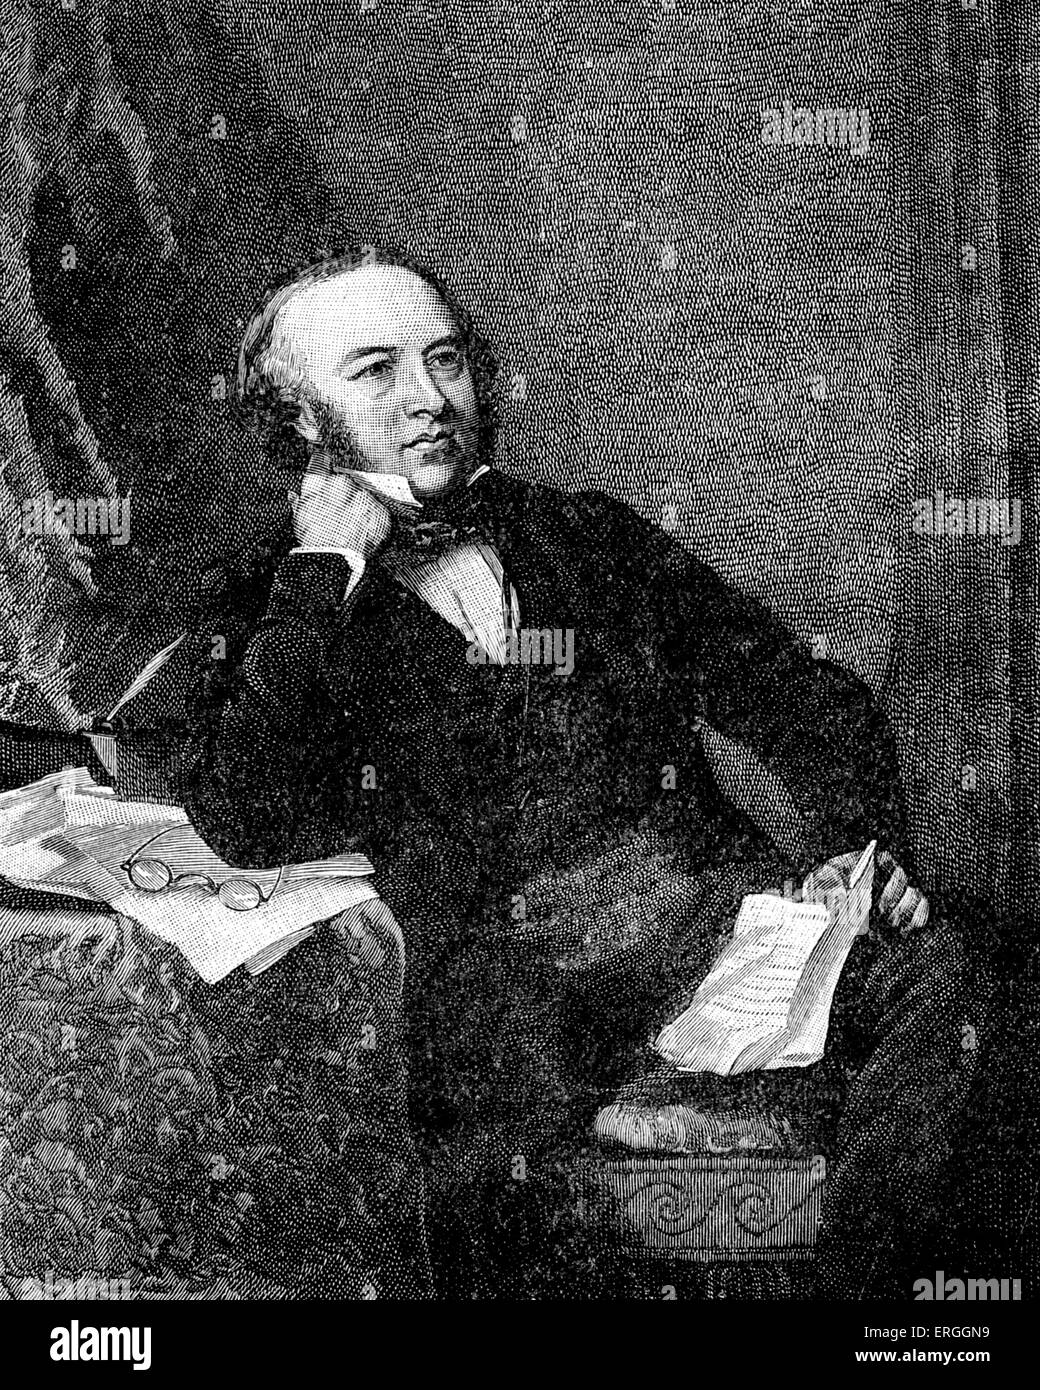 Sir Rowland Hill in 1847 Porträt. Englisch-Lehrer, Erfinder und Sozialreformer. Kämpferin für Postwesen reformieren Stockfoto